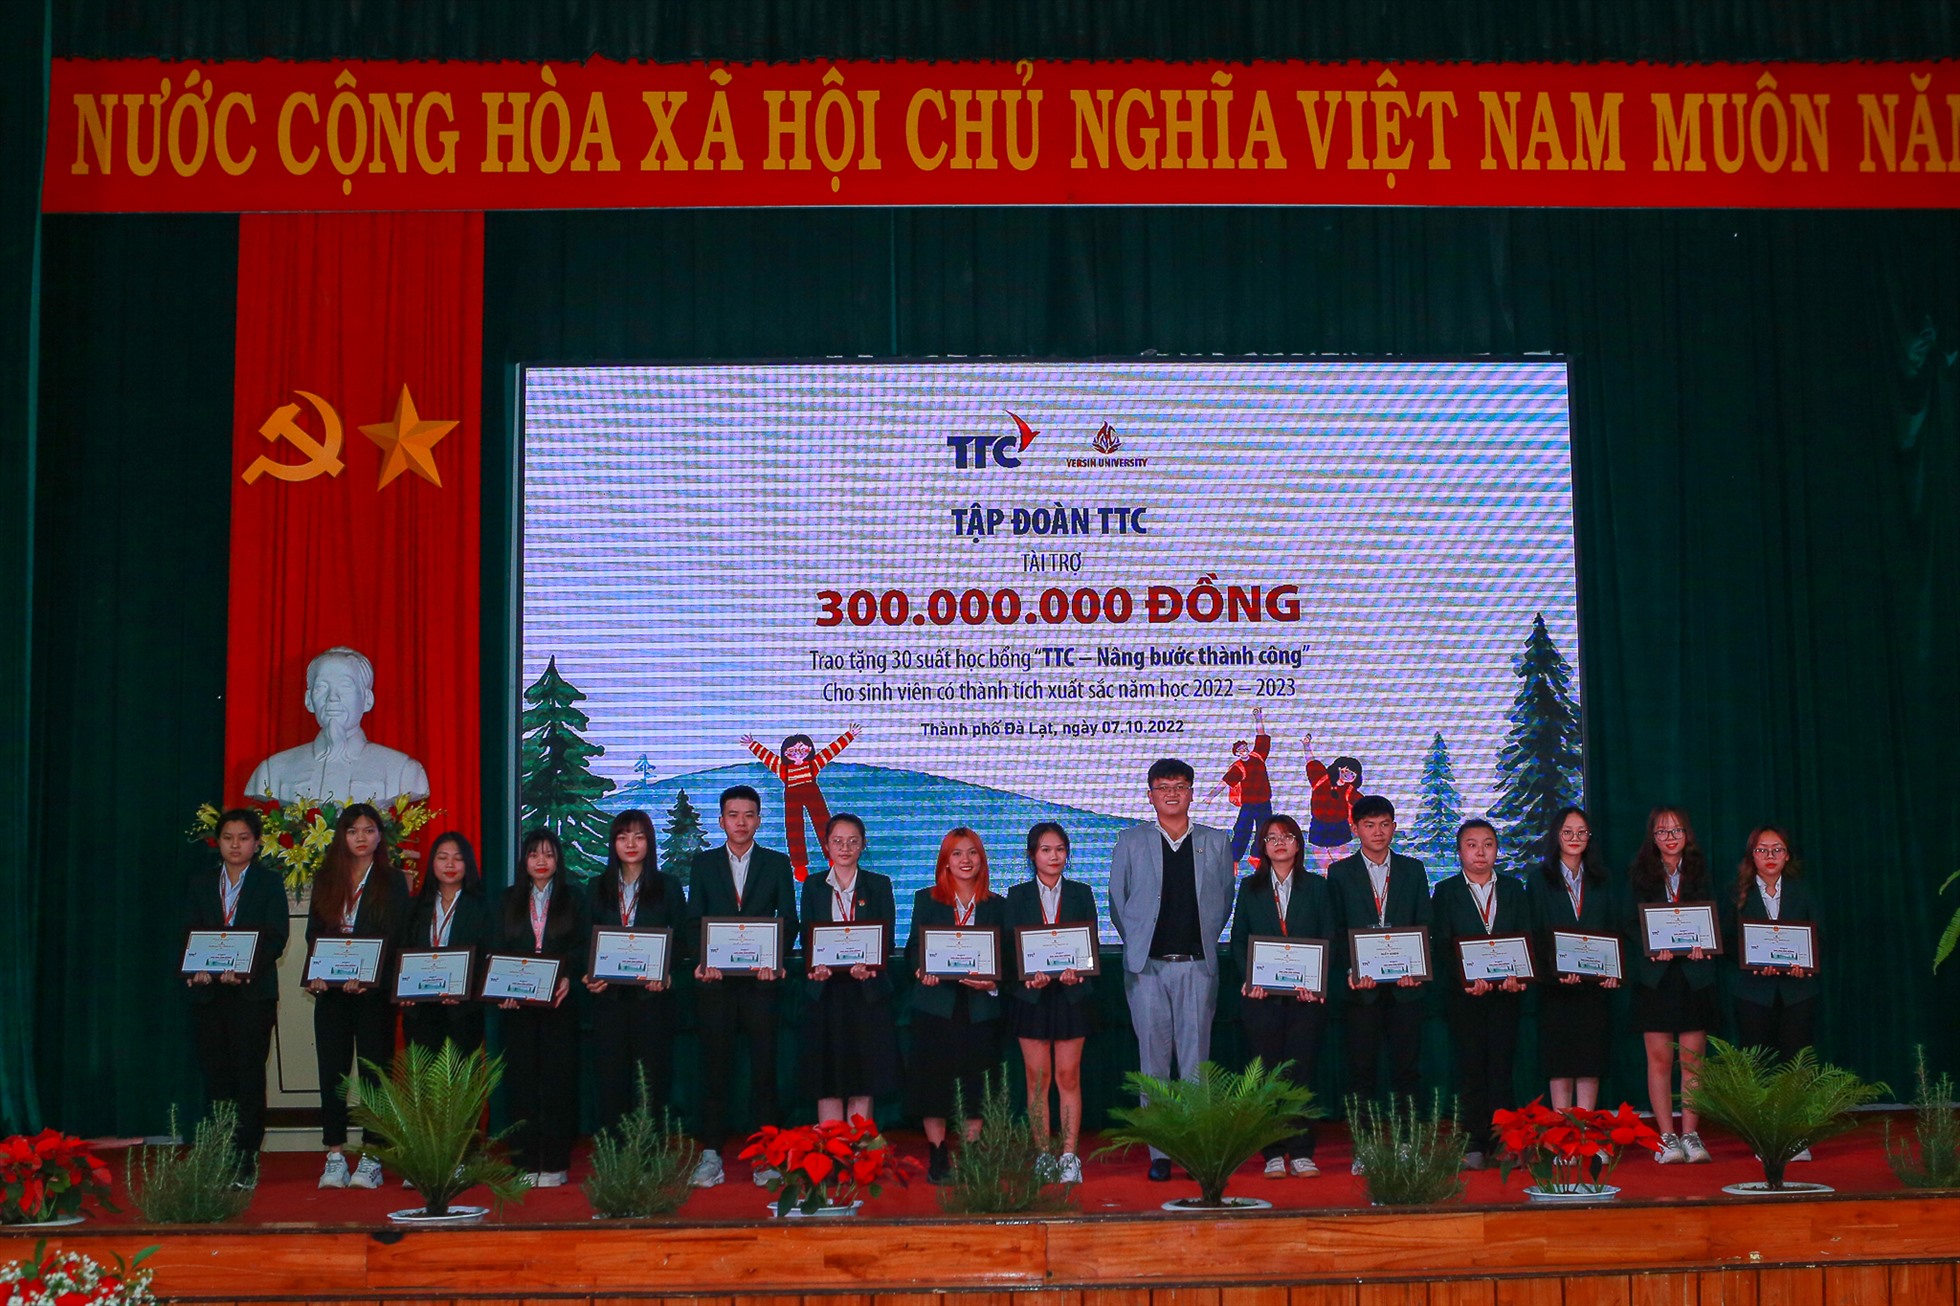 Tập đoàn TTC đã trao học bổng “TTC - Nâng bước thành công” cho 30 sinh viên của Trường Đại học Yersin Đà Lạt với tổng giá trị 300 triệu đồng.